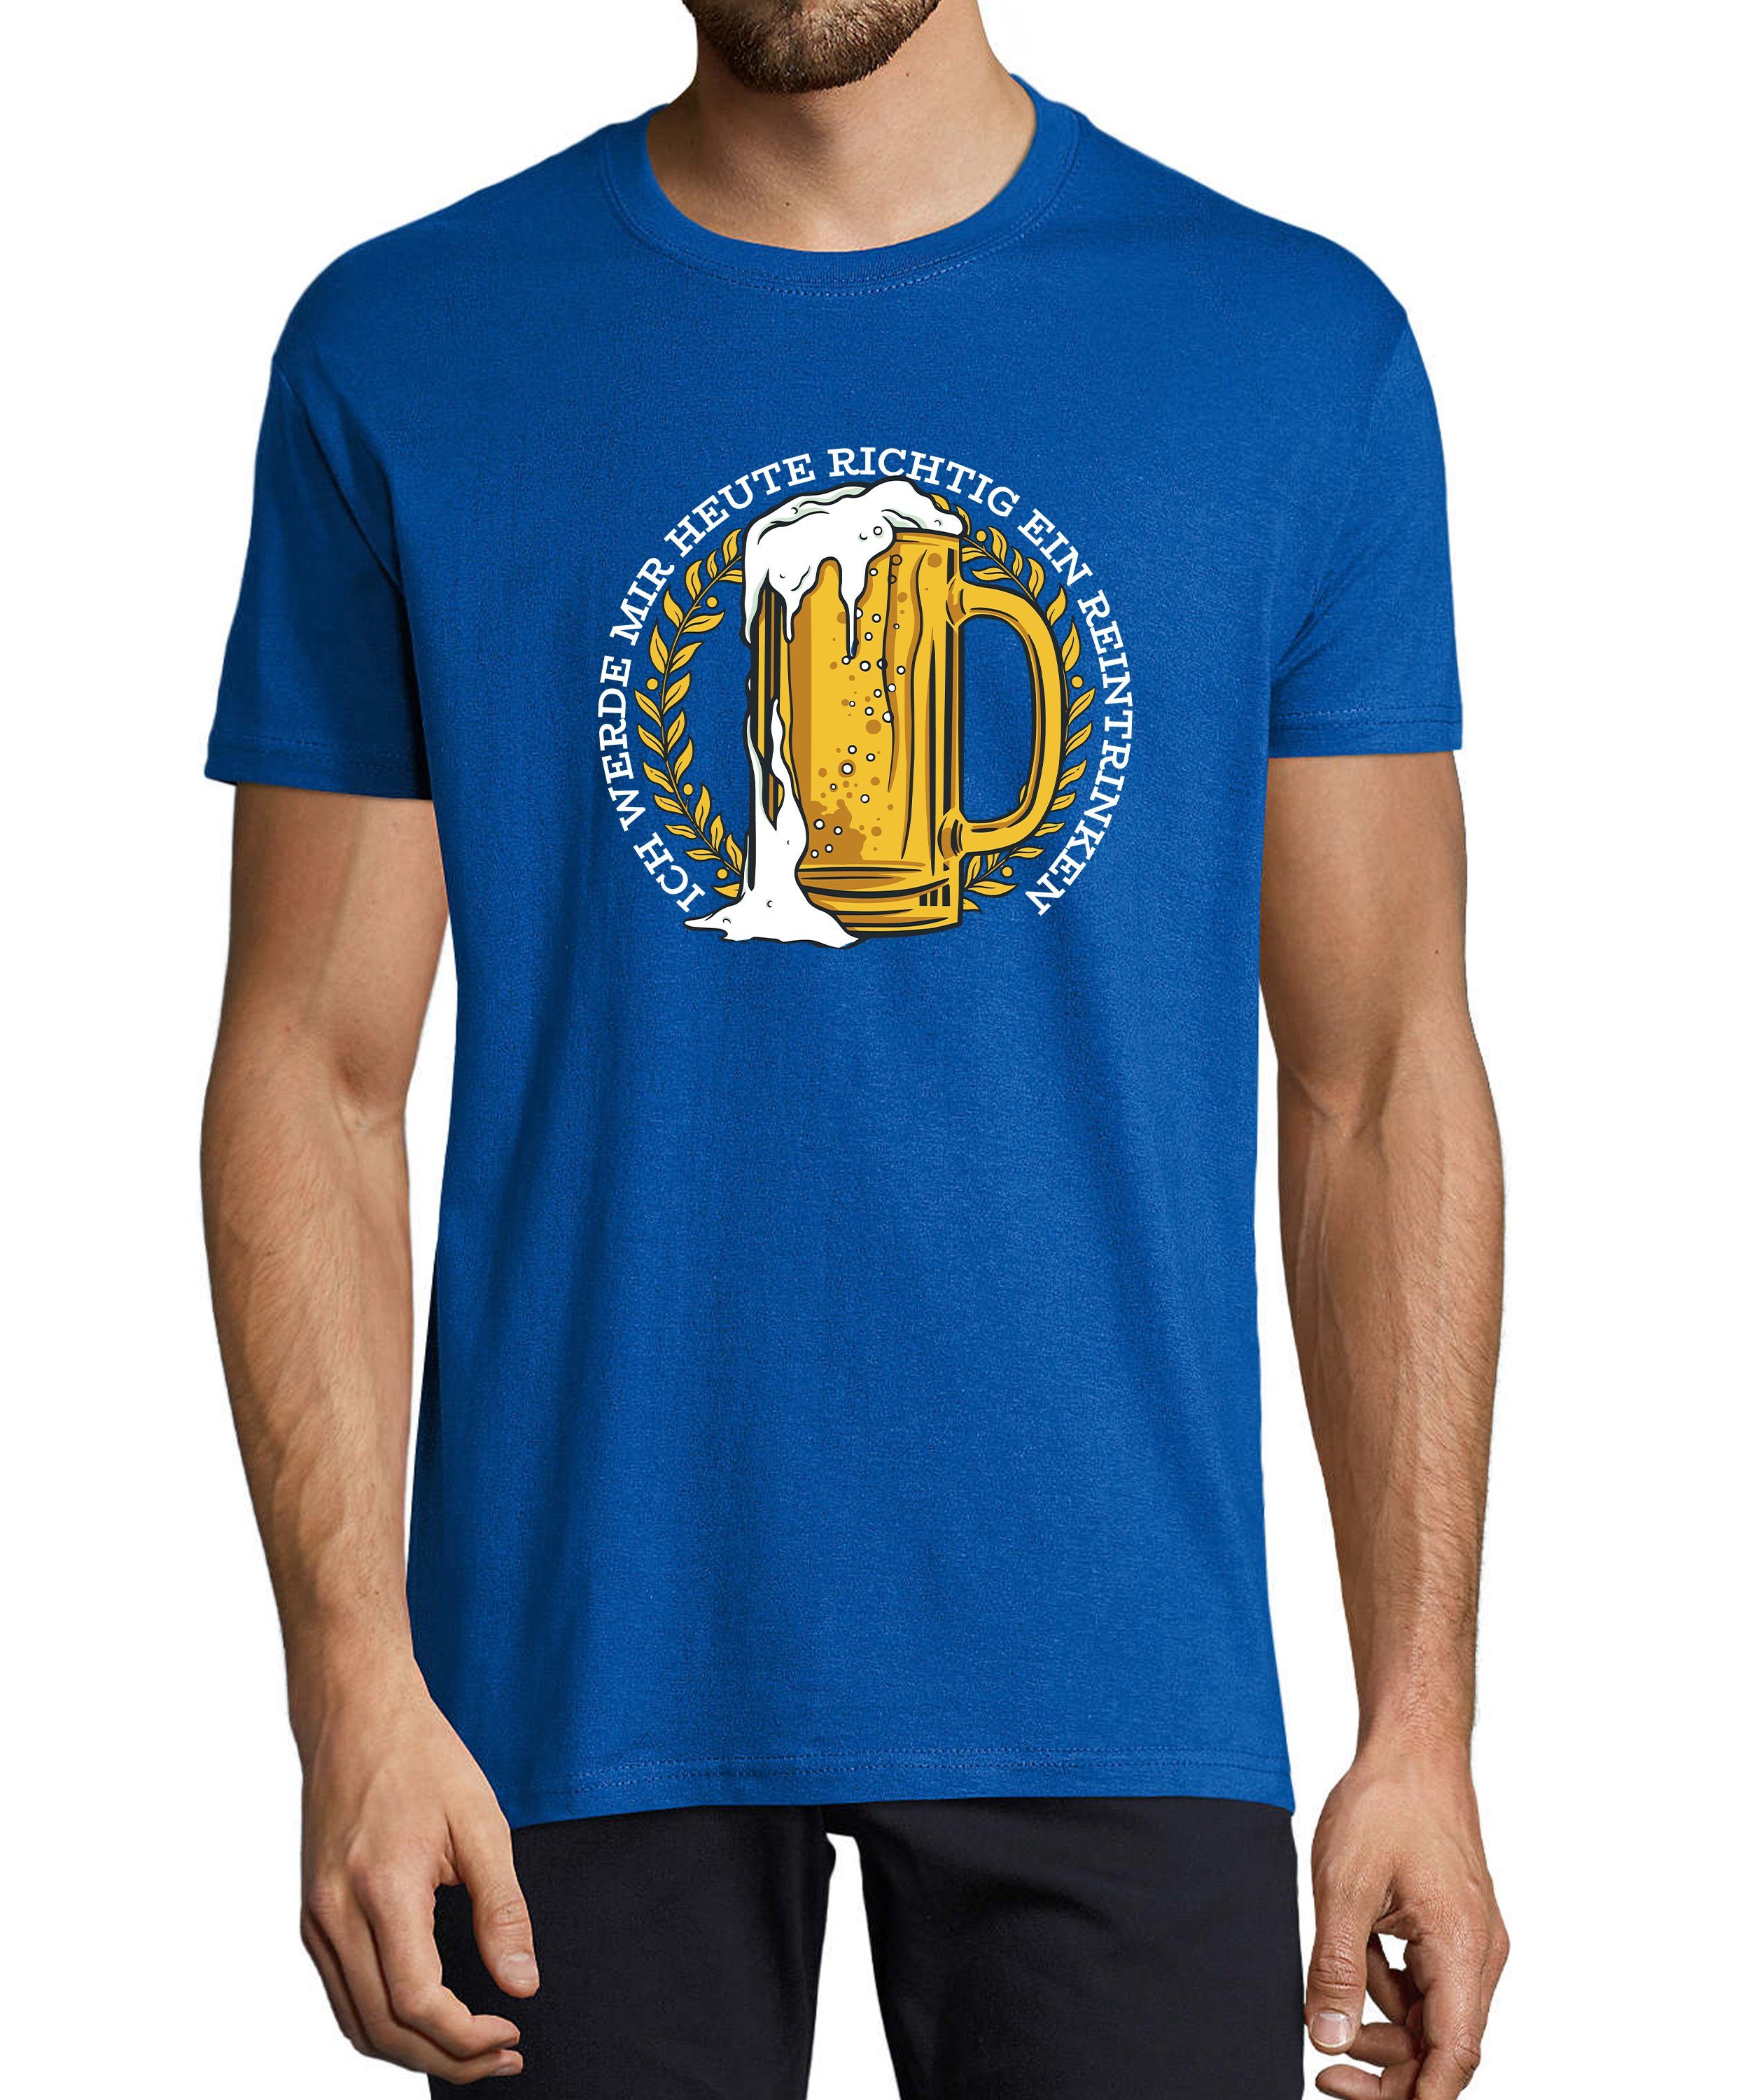 Mass T-Shirt Fit, royal Bier blau i311 MyDesign24 Regular Herren Aufdruck Oktoberfest - Shirt Fun mit Print mit Spruch Baumwollshirt Trinkshirt